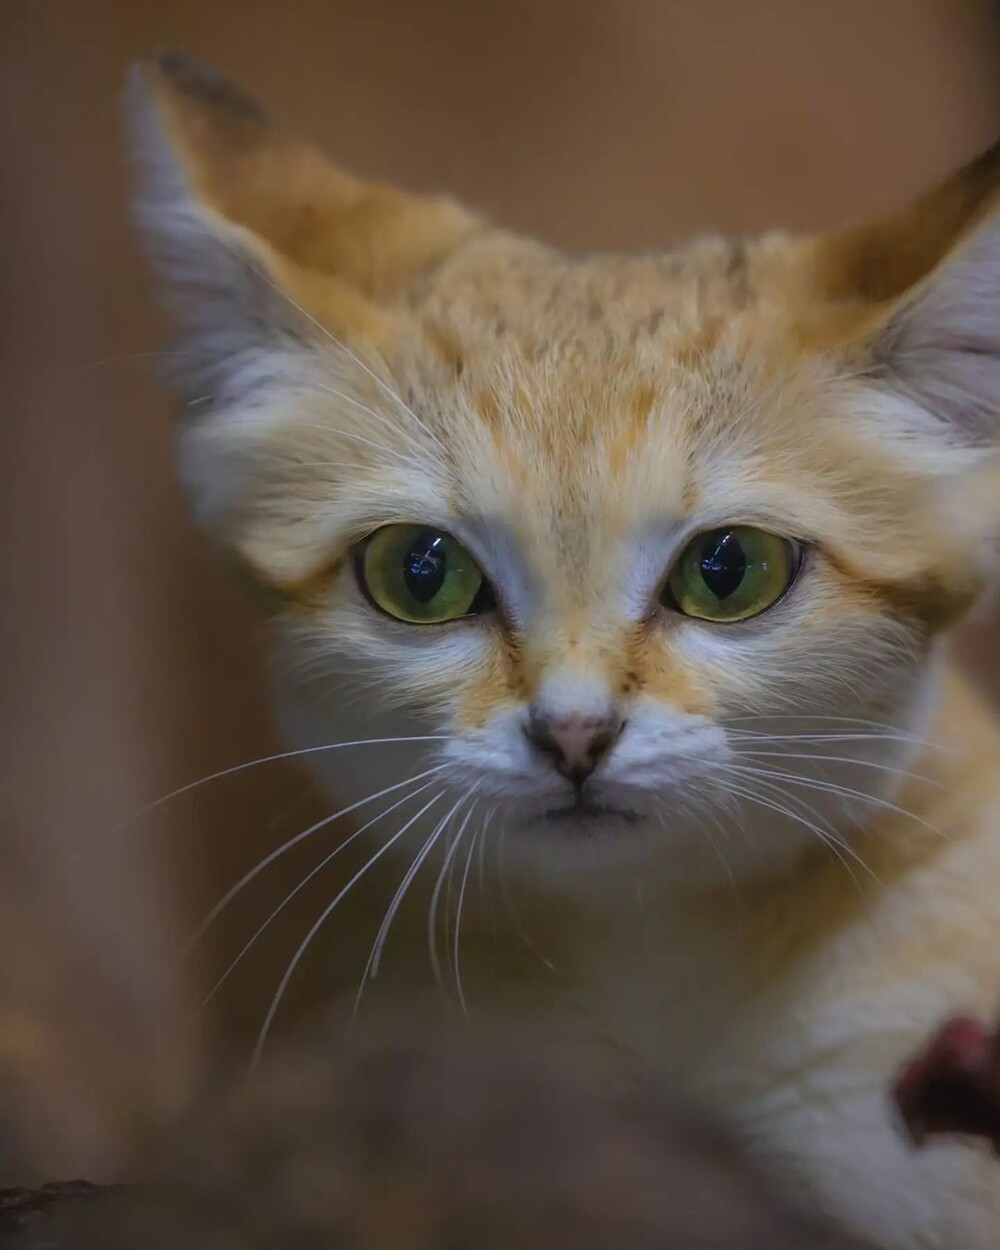 Ну очень грозный зверь: крошечная барханная кошка — рекордсмен по территории